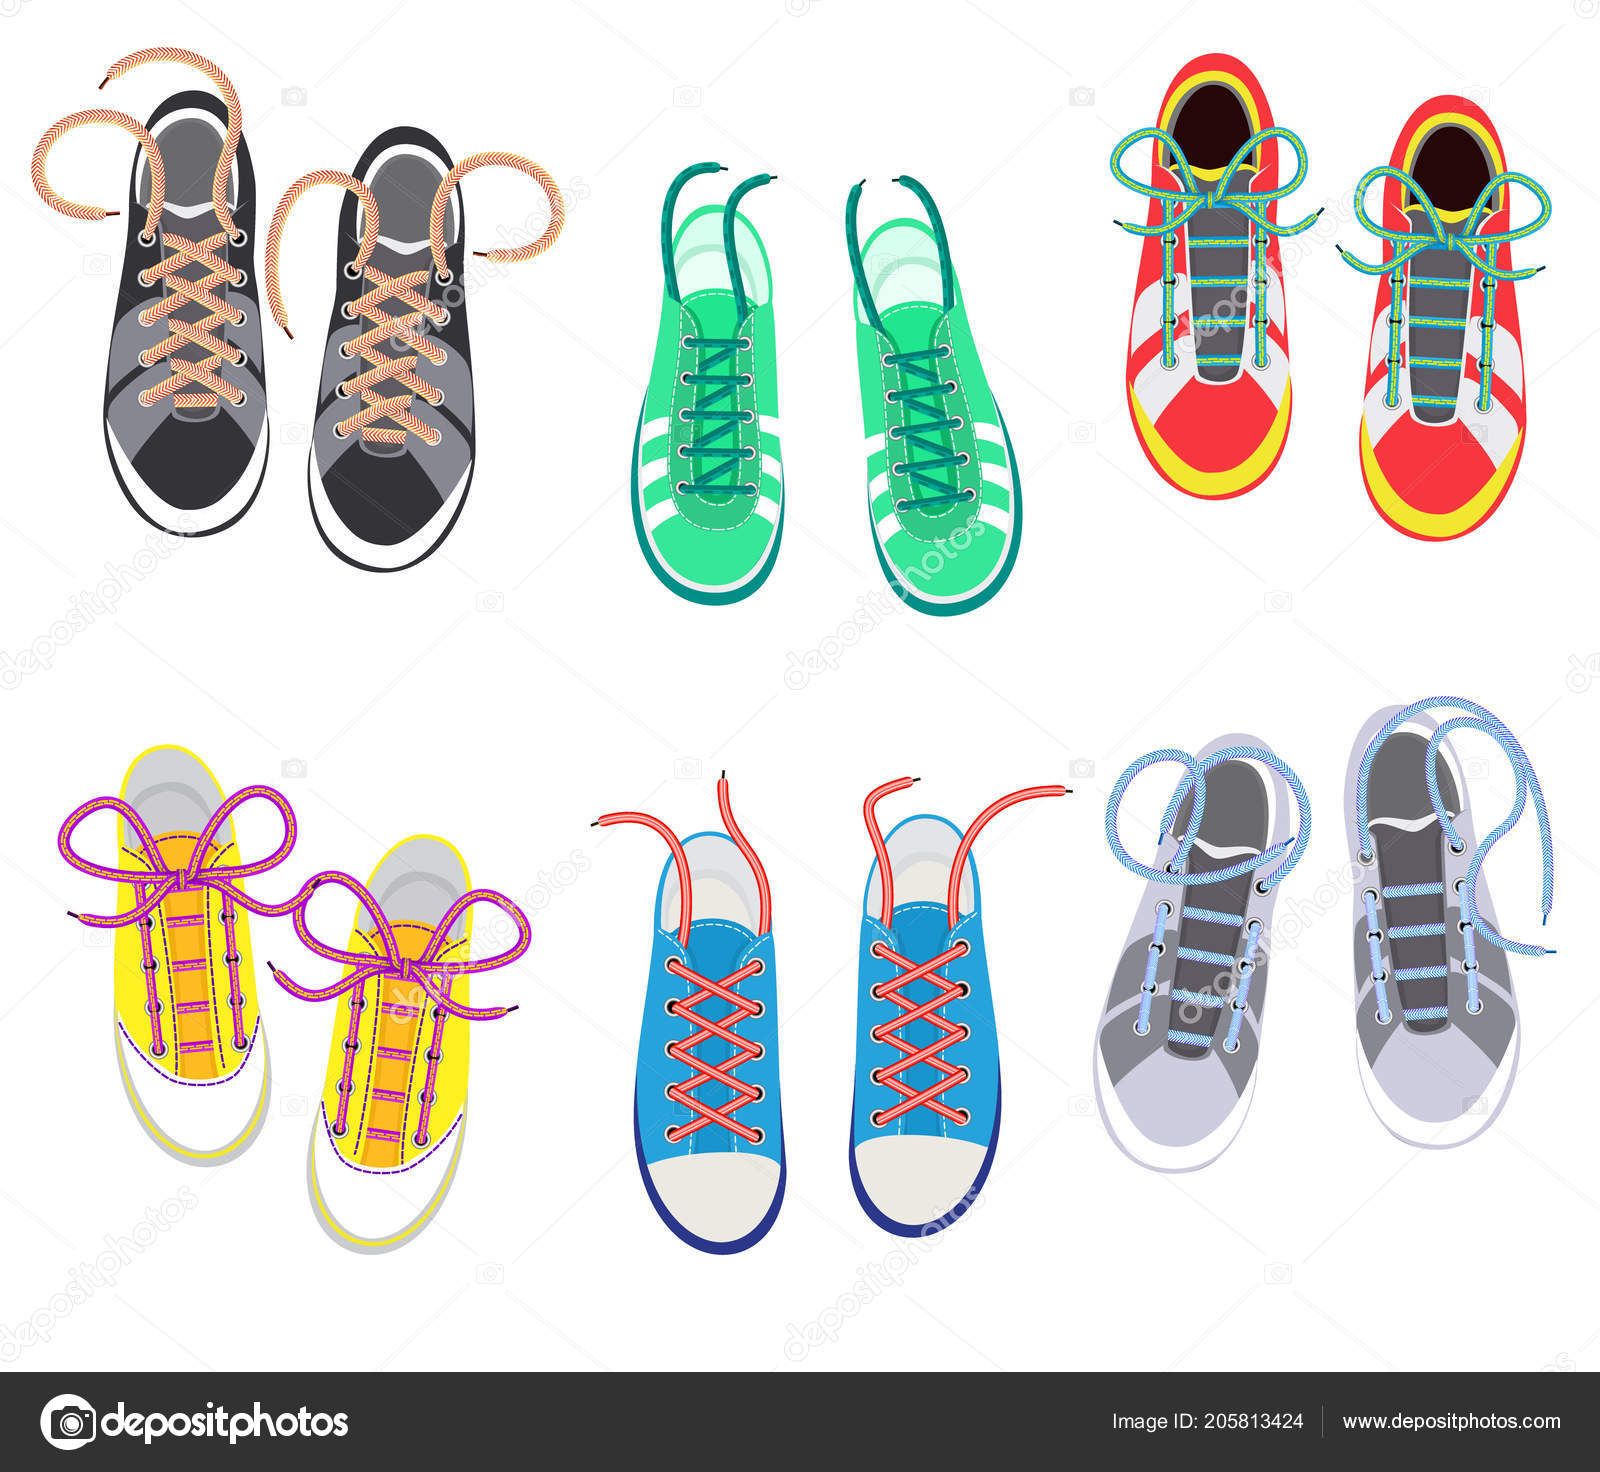 Шнурки - это аксессуар: 12 классных трюков для модного летнего образа идеи,Хенд мейд